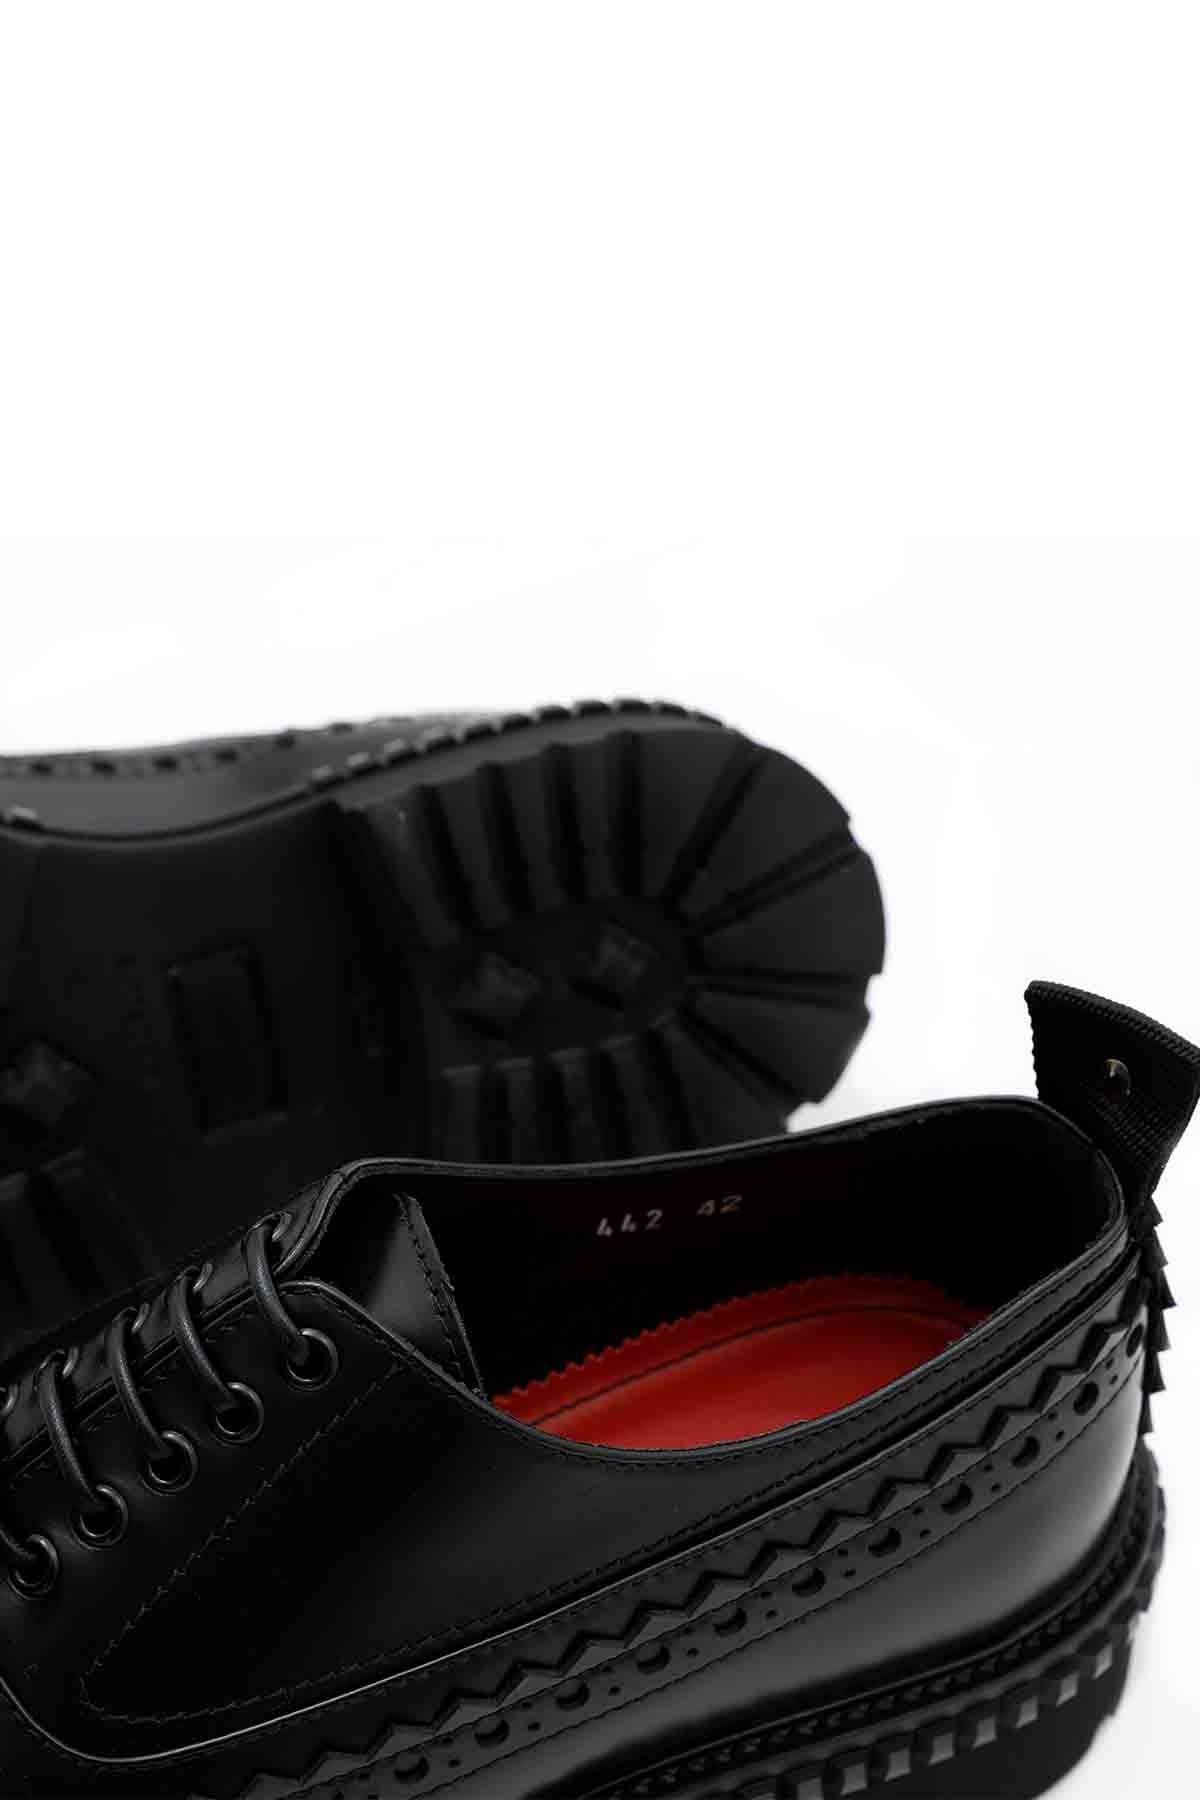 Attimonelli's Zımbalı Deri Ayakkabı-Libas Trendy Fashion Store